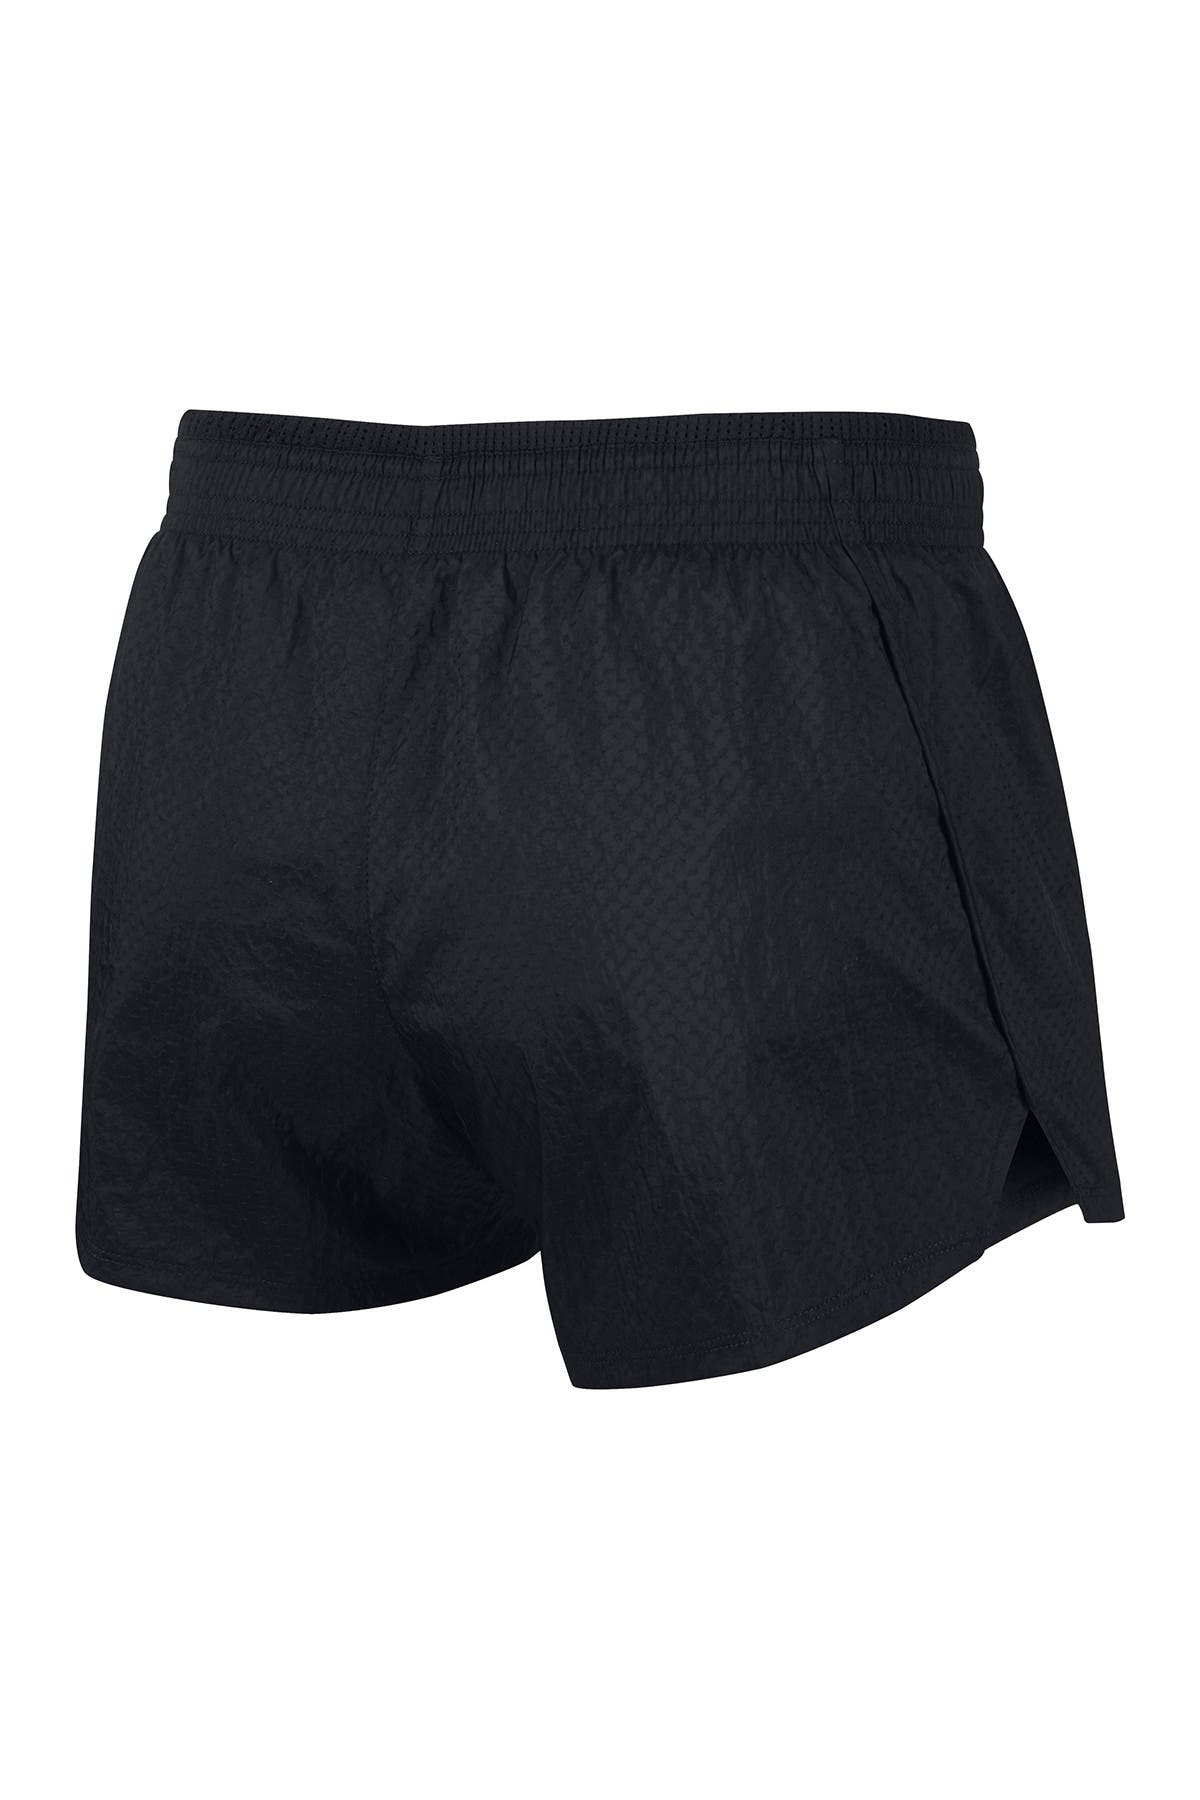 Nike | Swoosh Running Shorts 